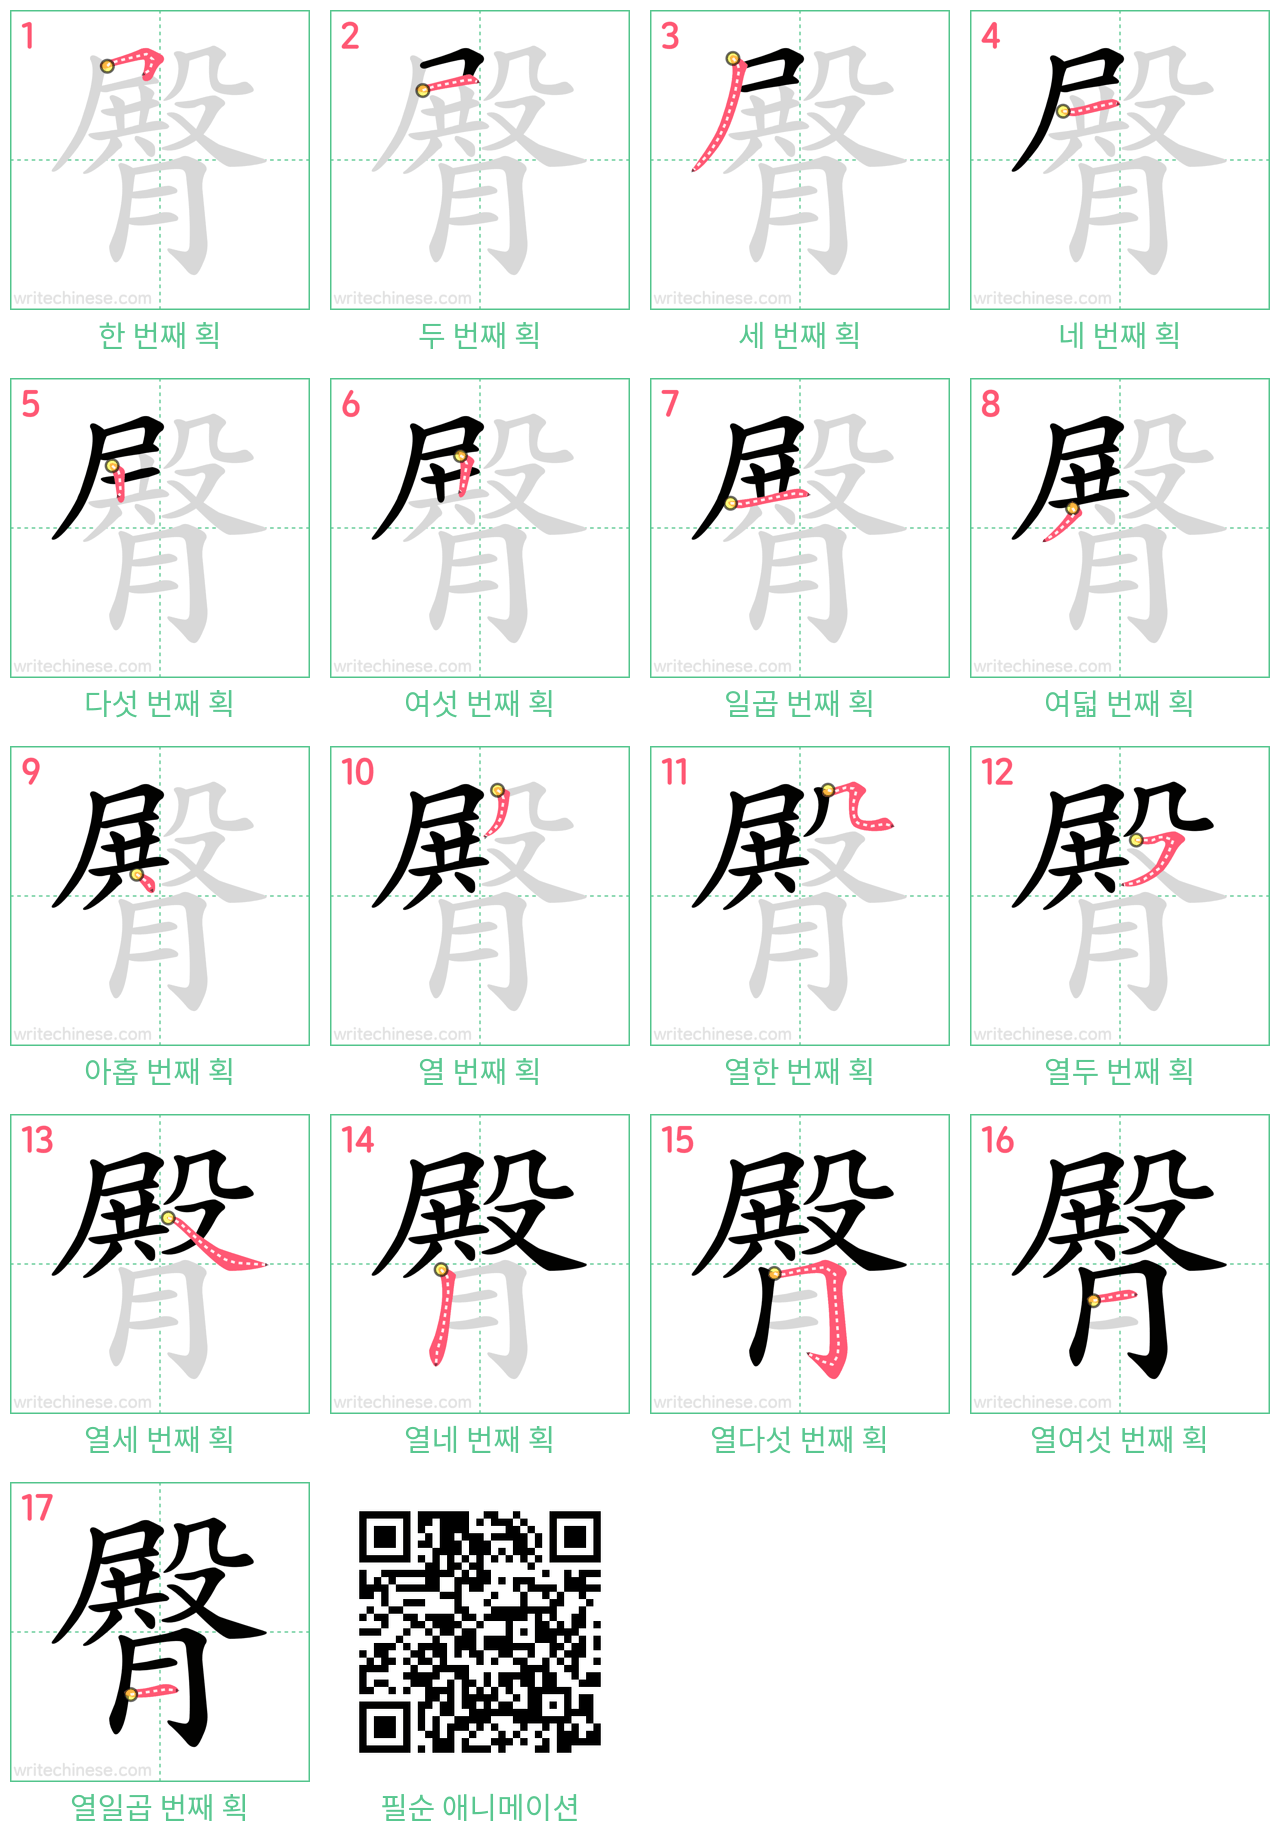 臀 step-by-step stroke order diagrams